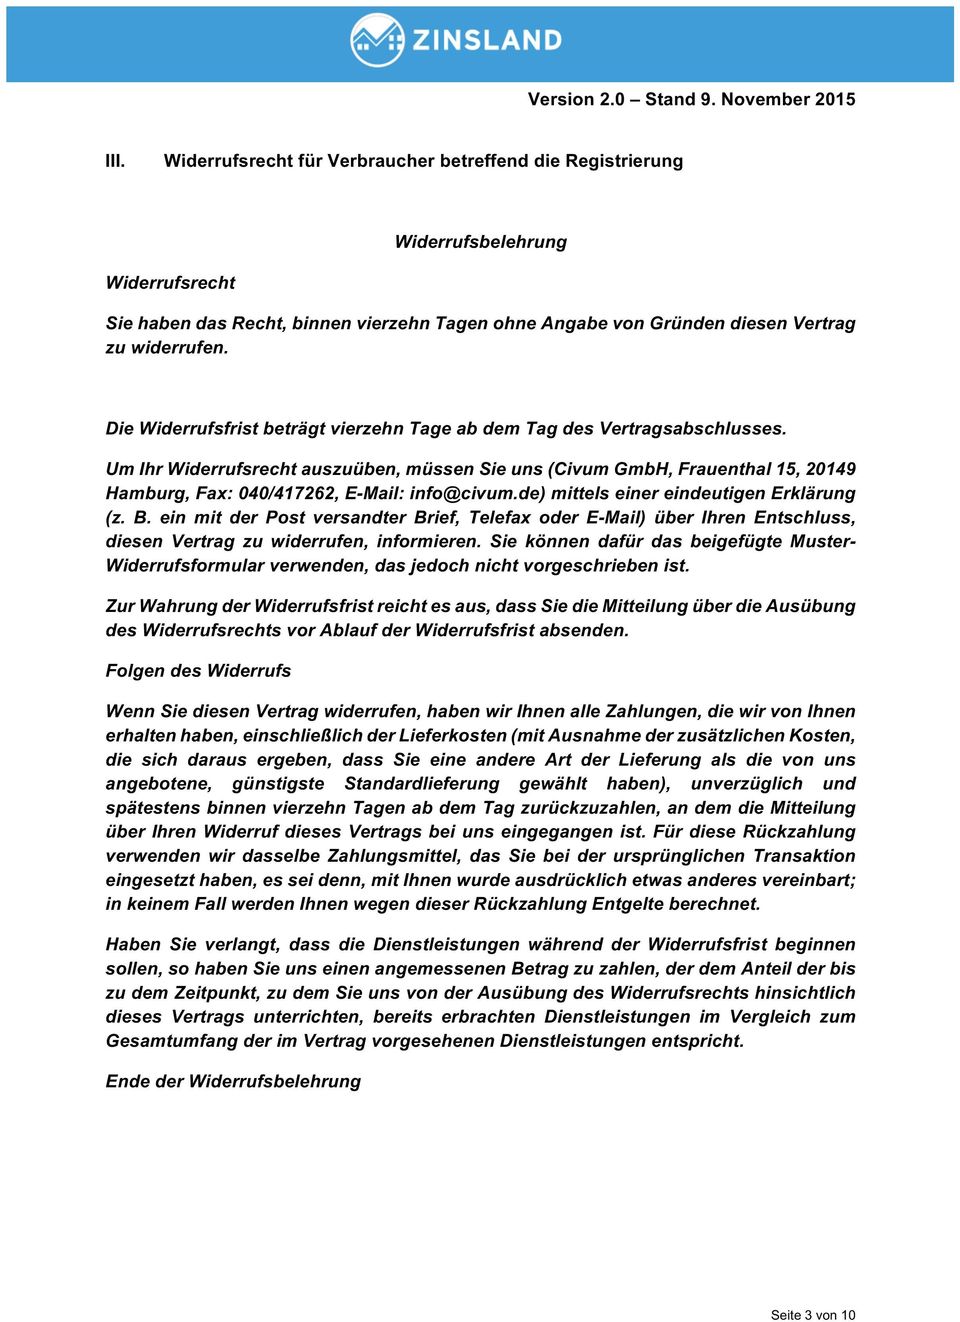 Um Ihr Widerrufsrecht auszuüben, müssen Sie uns (Civum GmbH, Frauenthal 15, 20149 Hamburg, Fax: 040/417262, E-Mail: info@civum.de) mittels einer eindeutigen Erklärung (z. B.